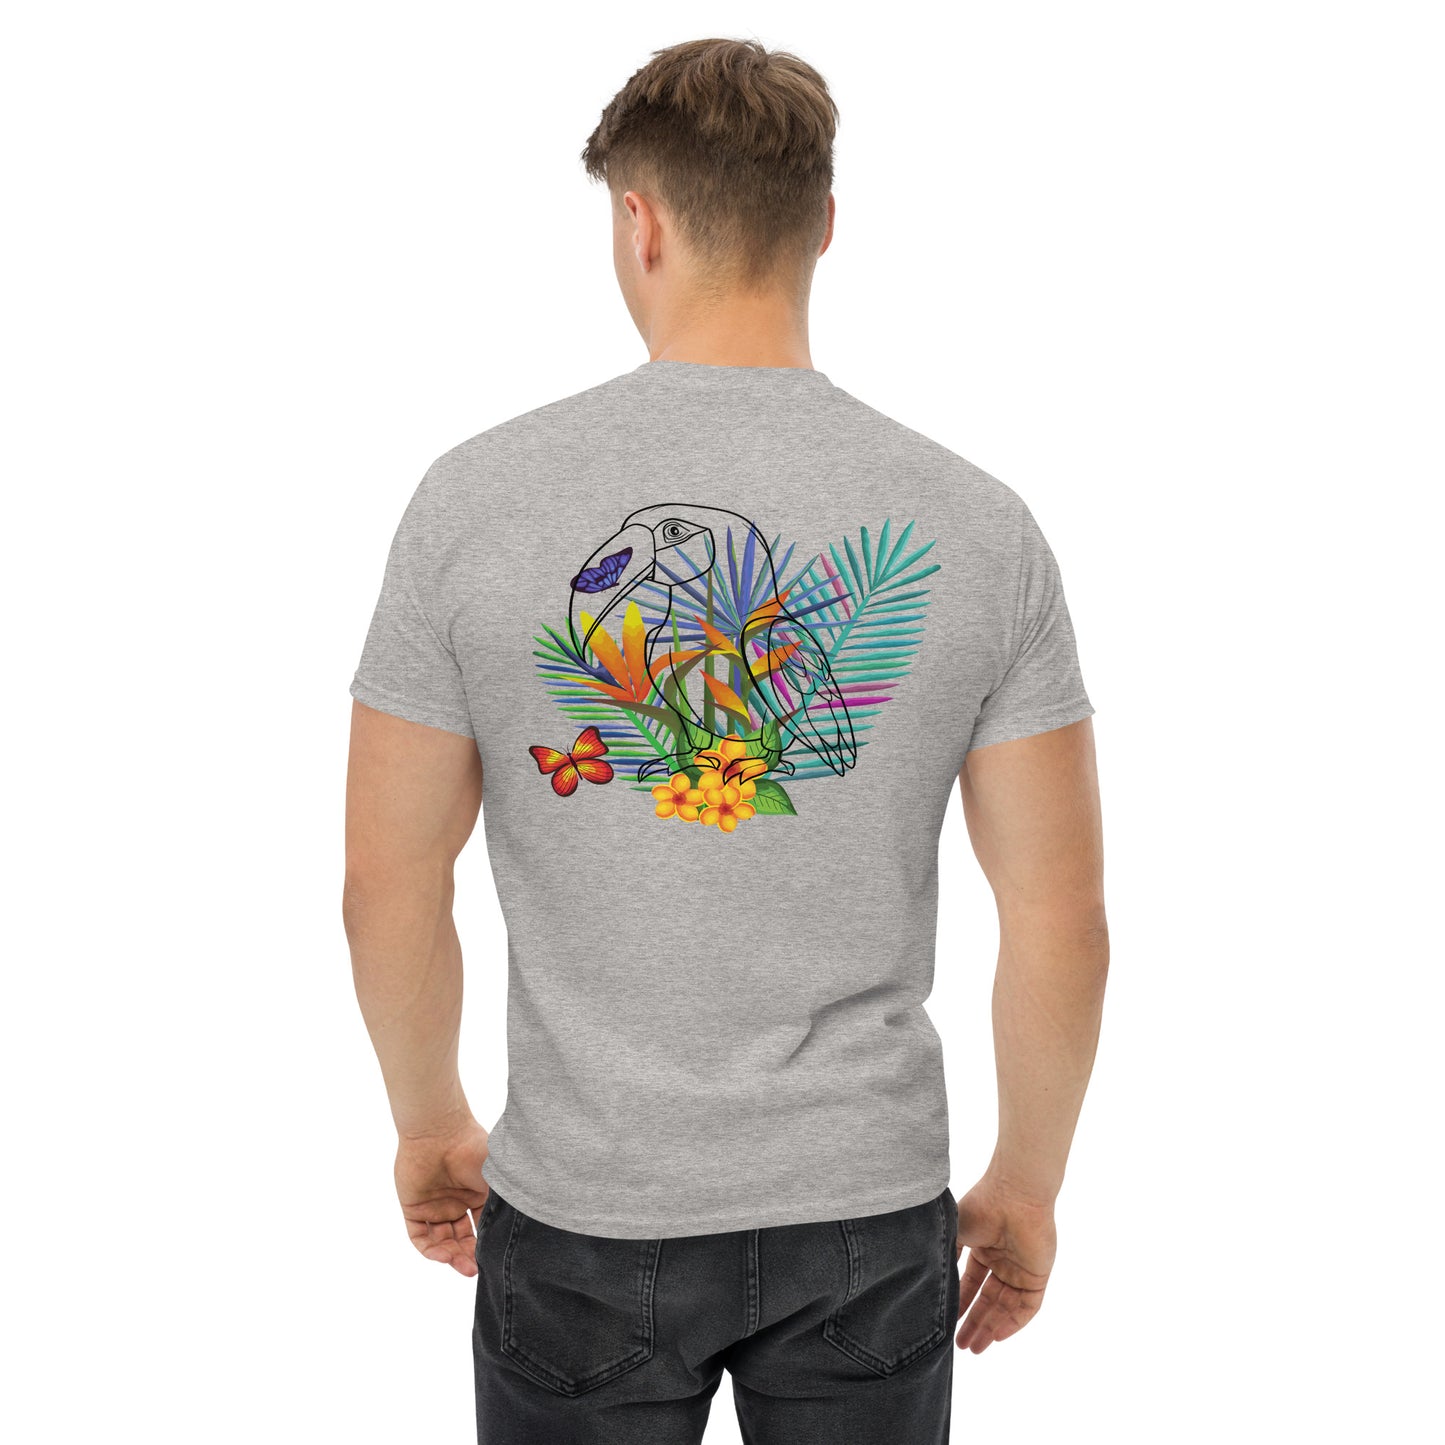 Camiseta gris con diseño caribeño a la espalda, un papagayo y flores tropicales